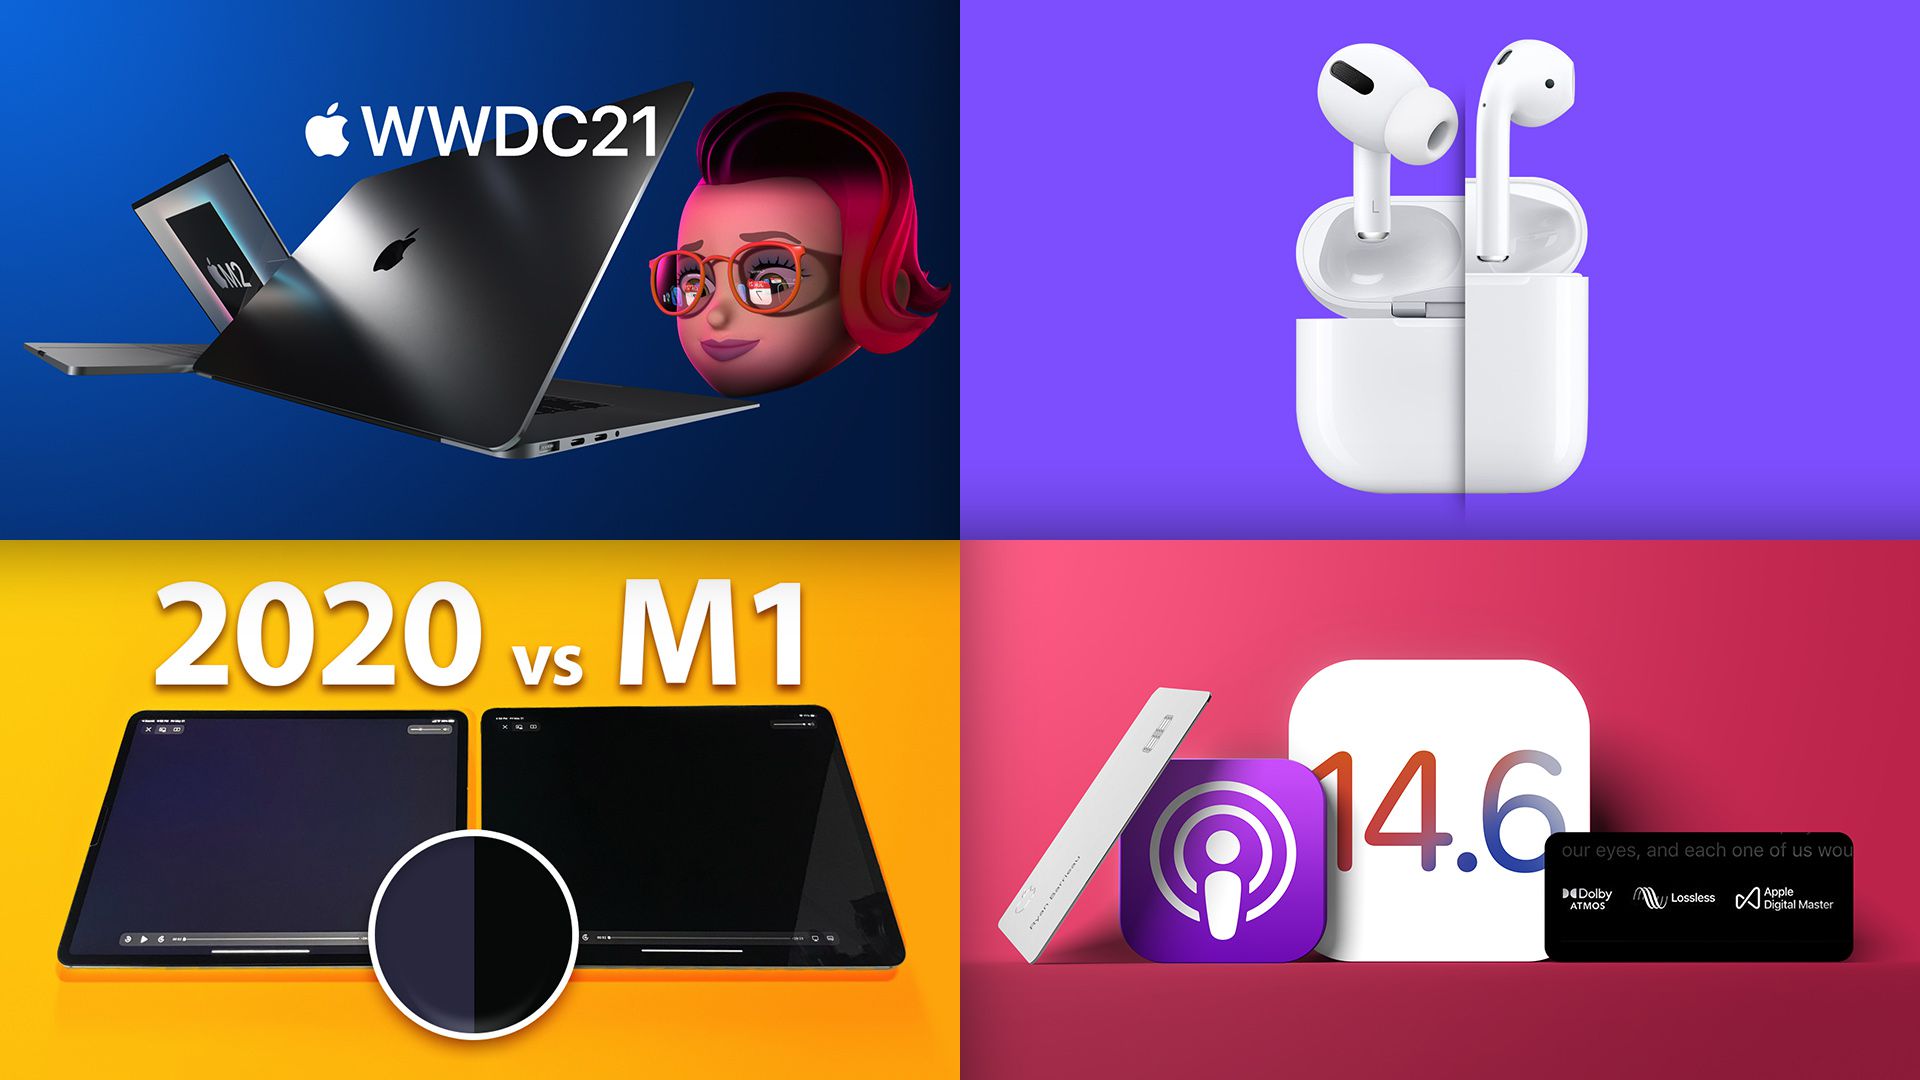 Historias destacadas: ¿Nuevo MacBook Pro en la WWDC?, IOS 14.6 lanzado, rumores de Airboats